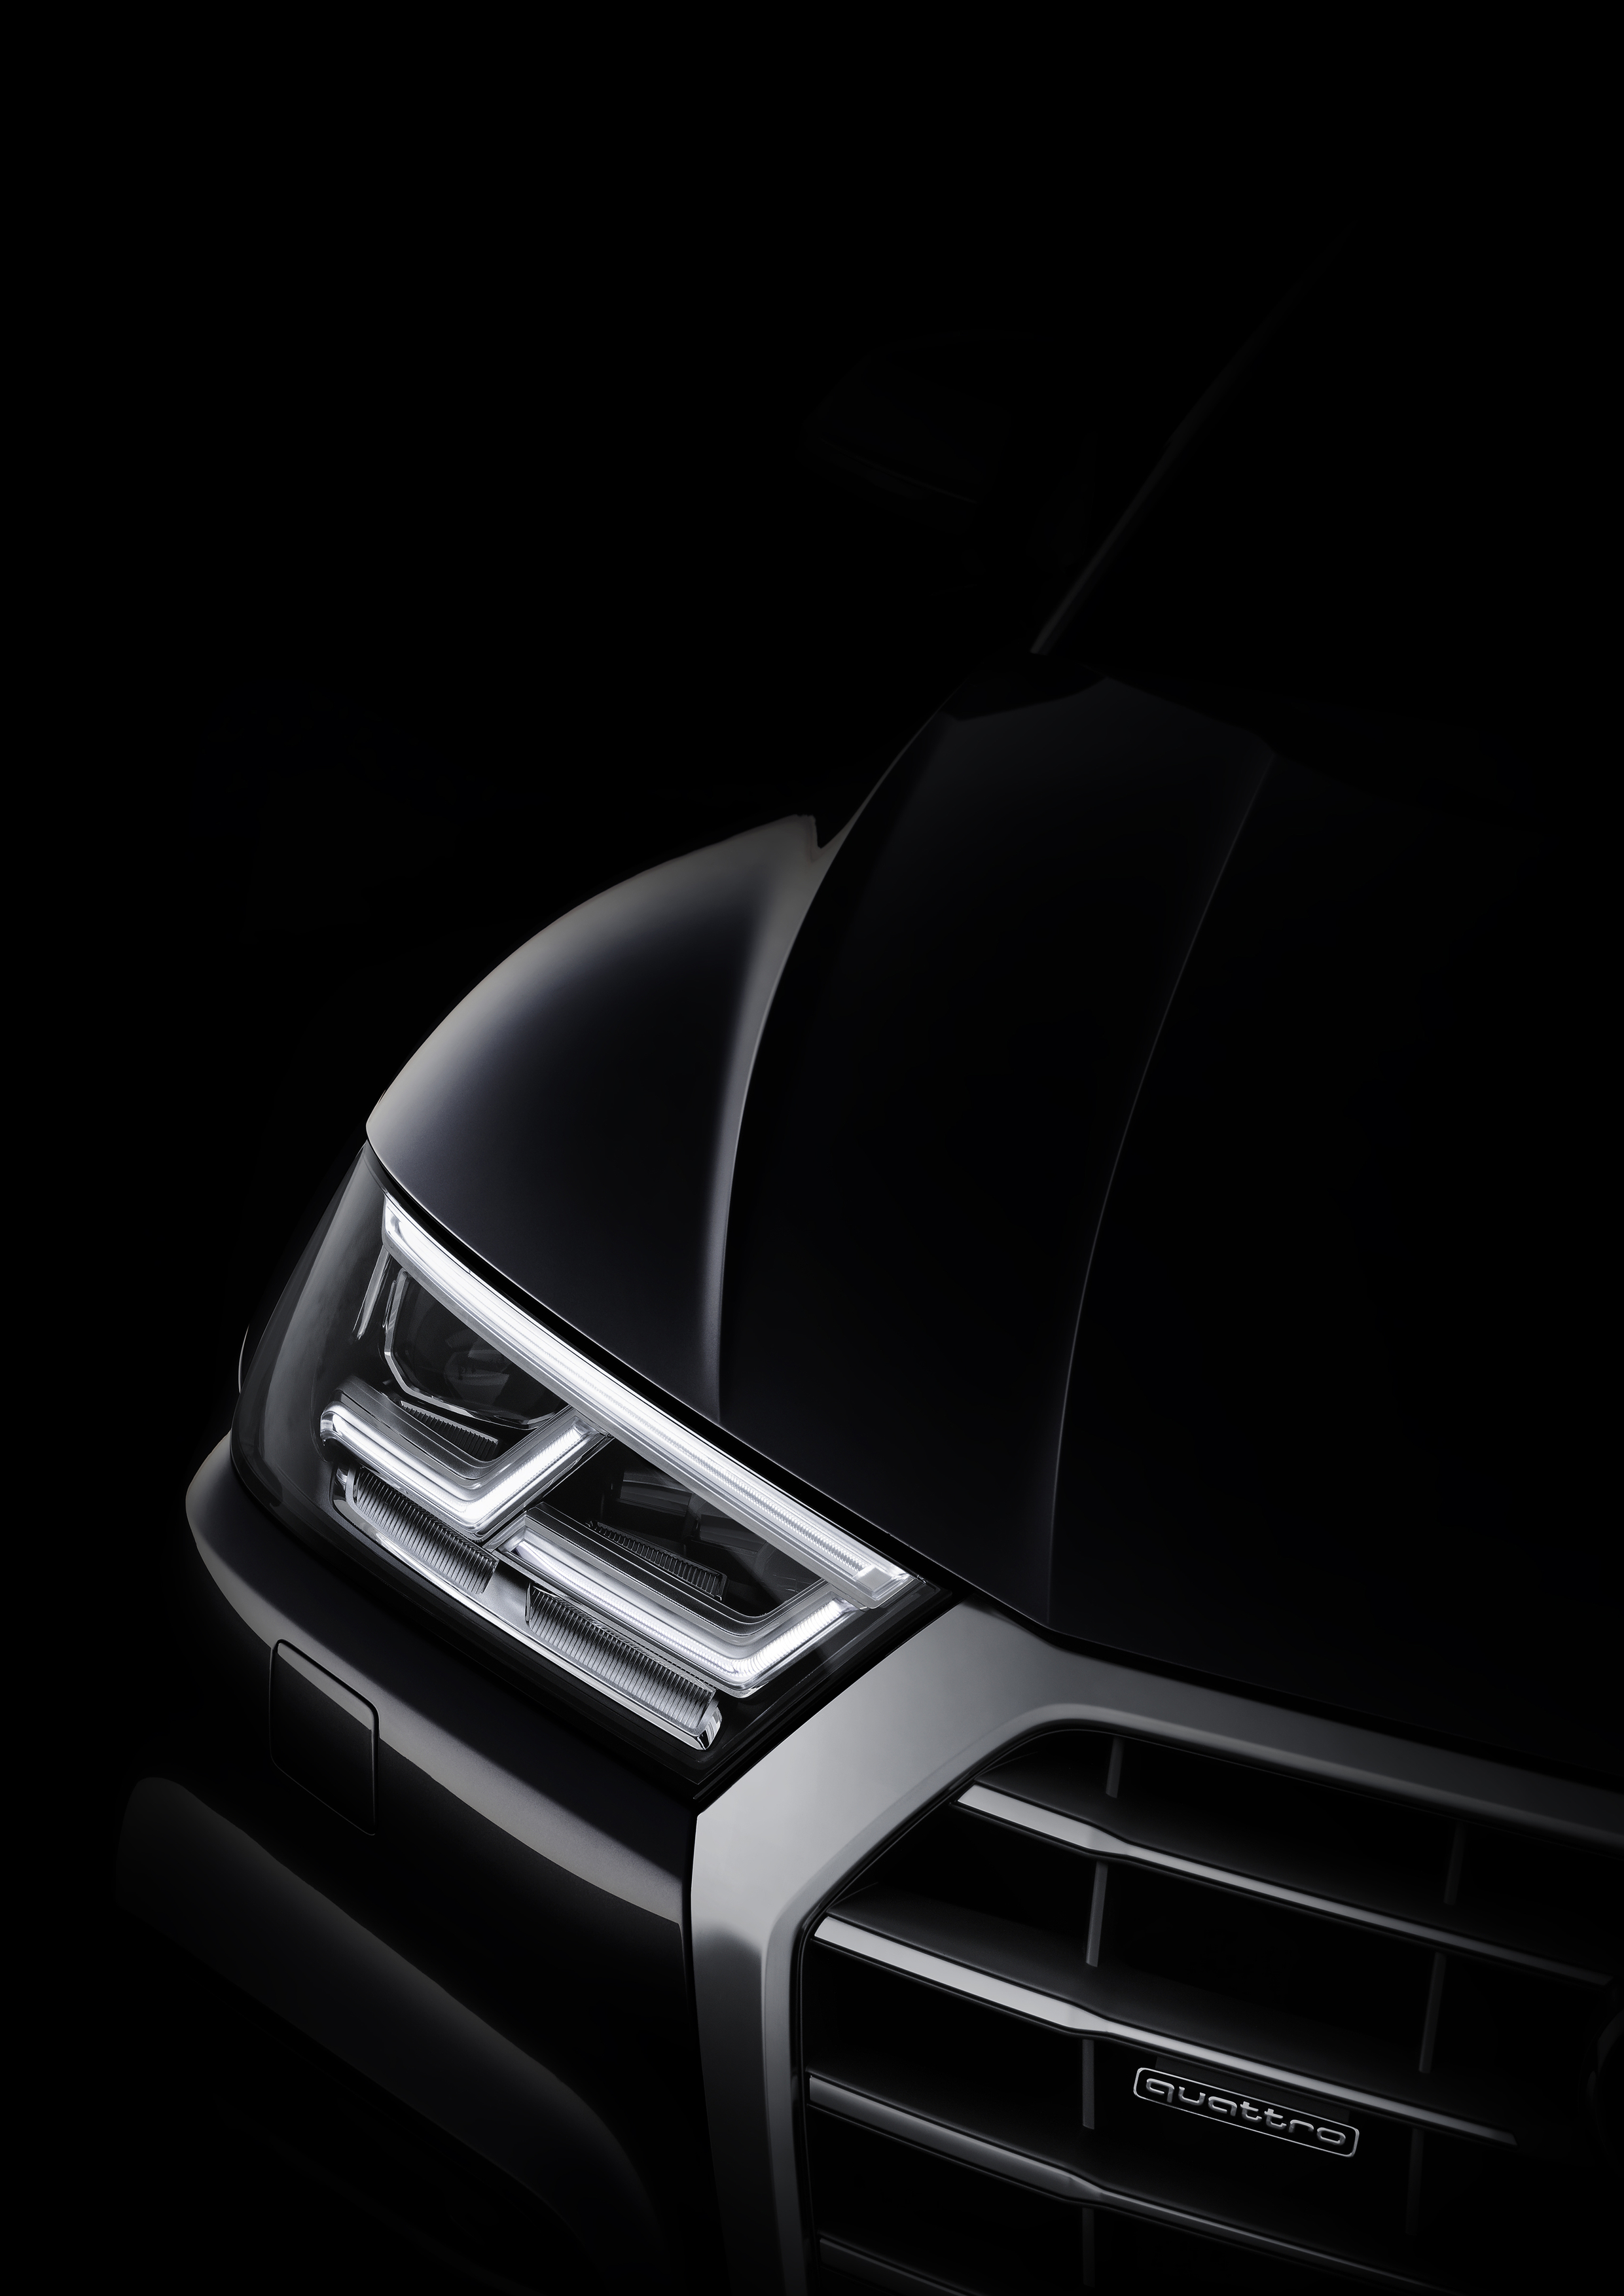 The new Audi Q5